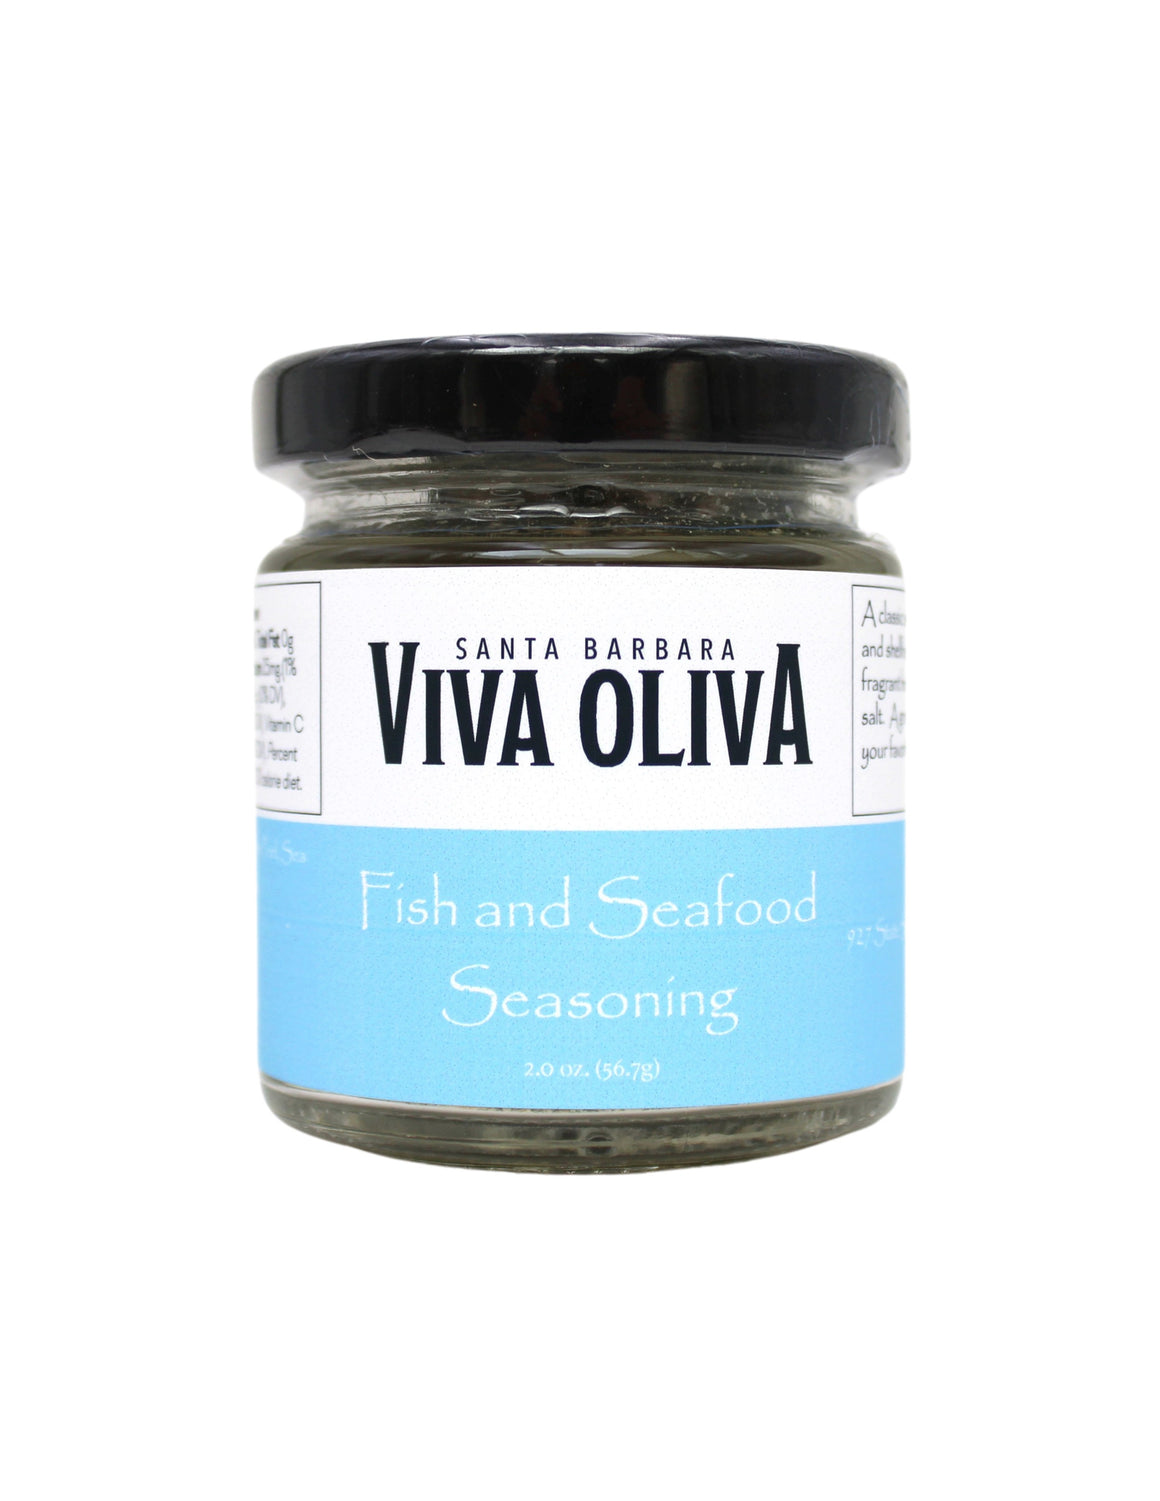 Viva Oliva Seasoning - Fish and Seafood